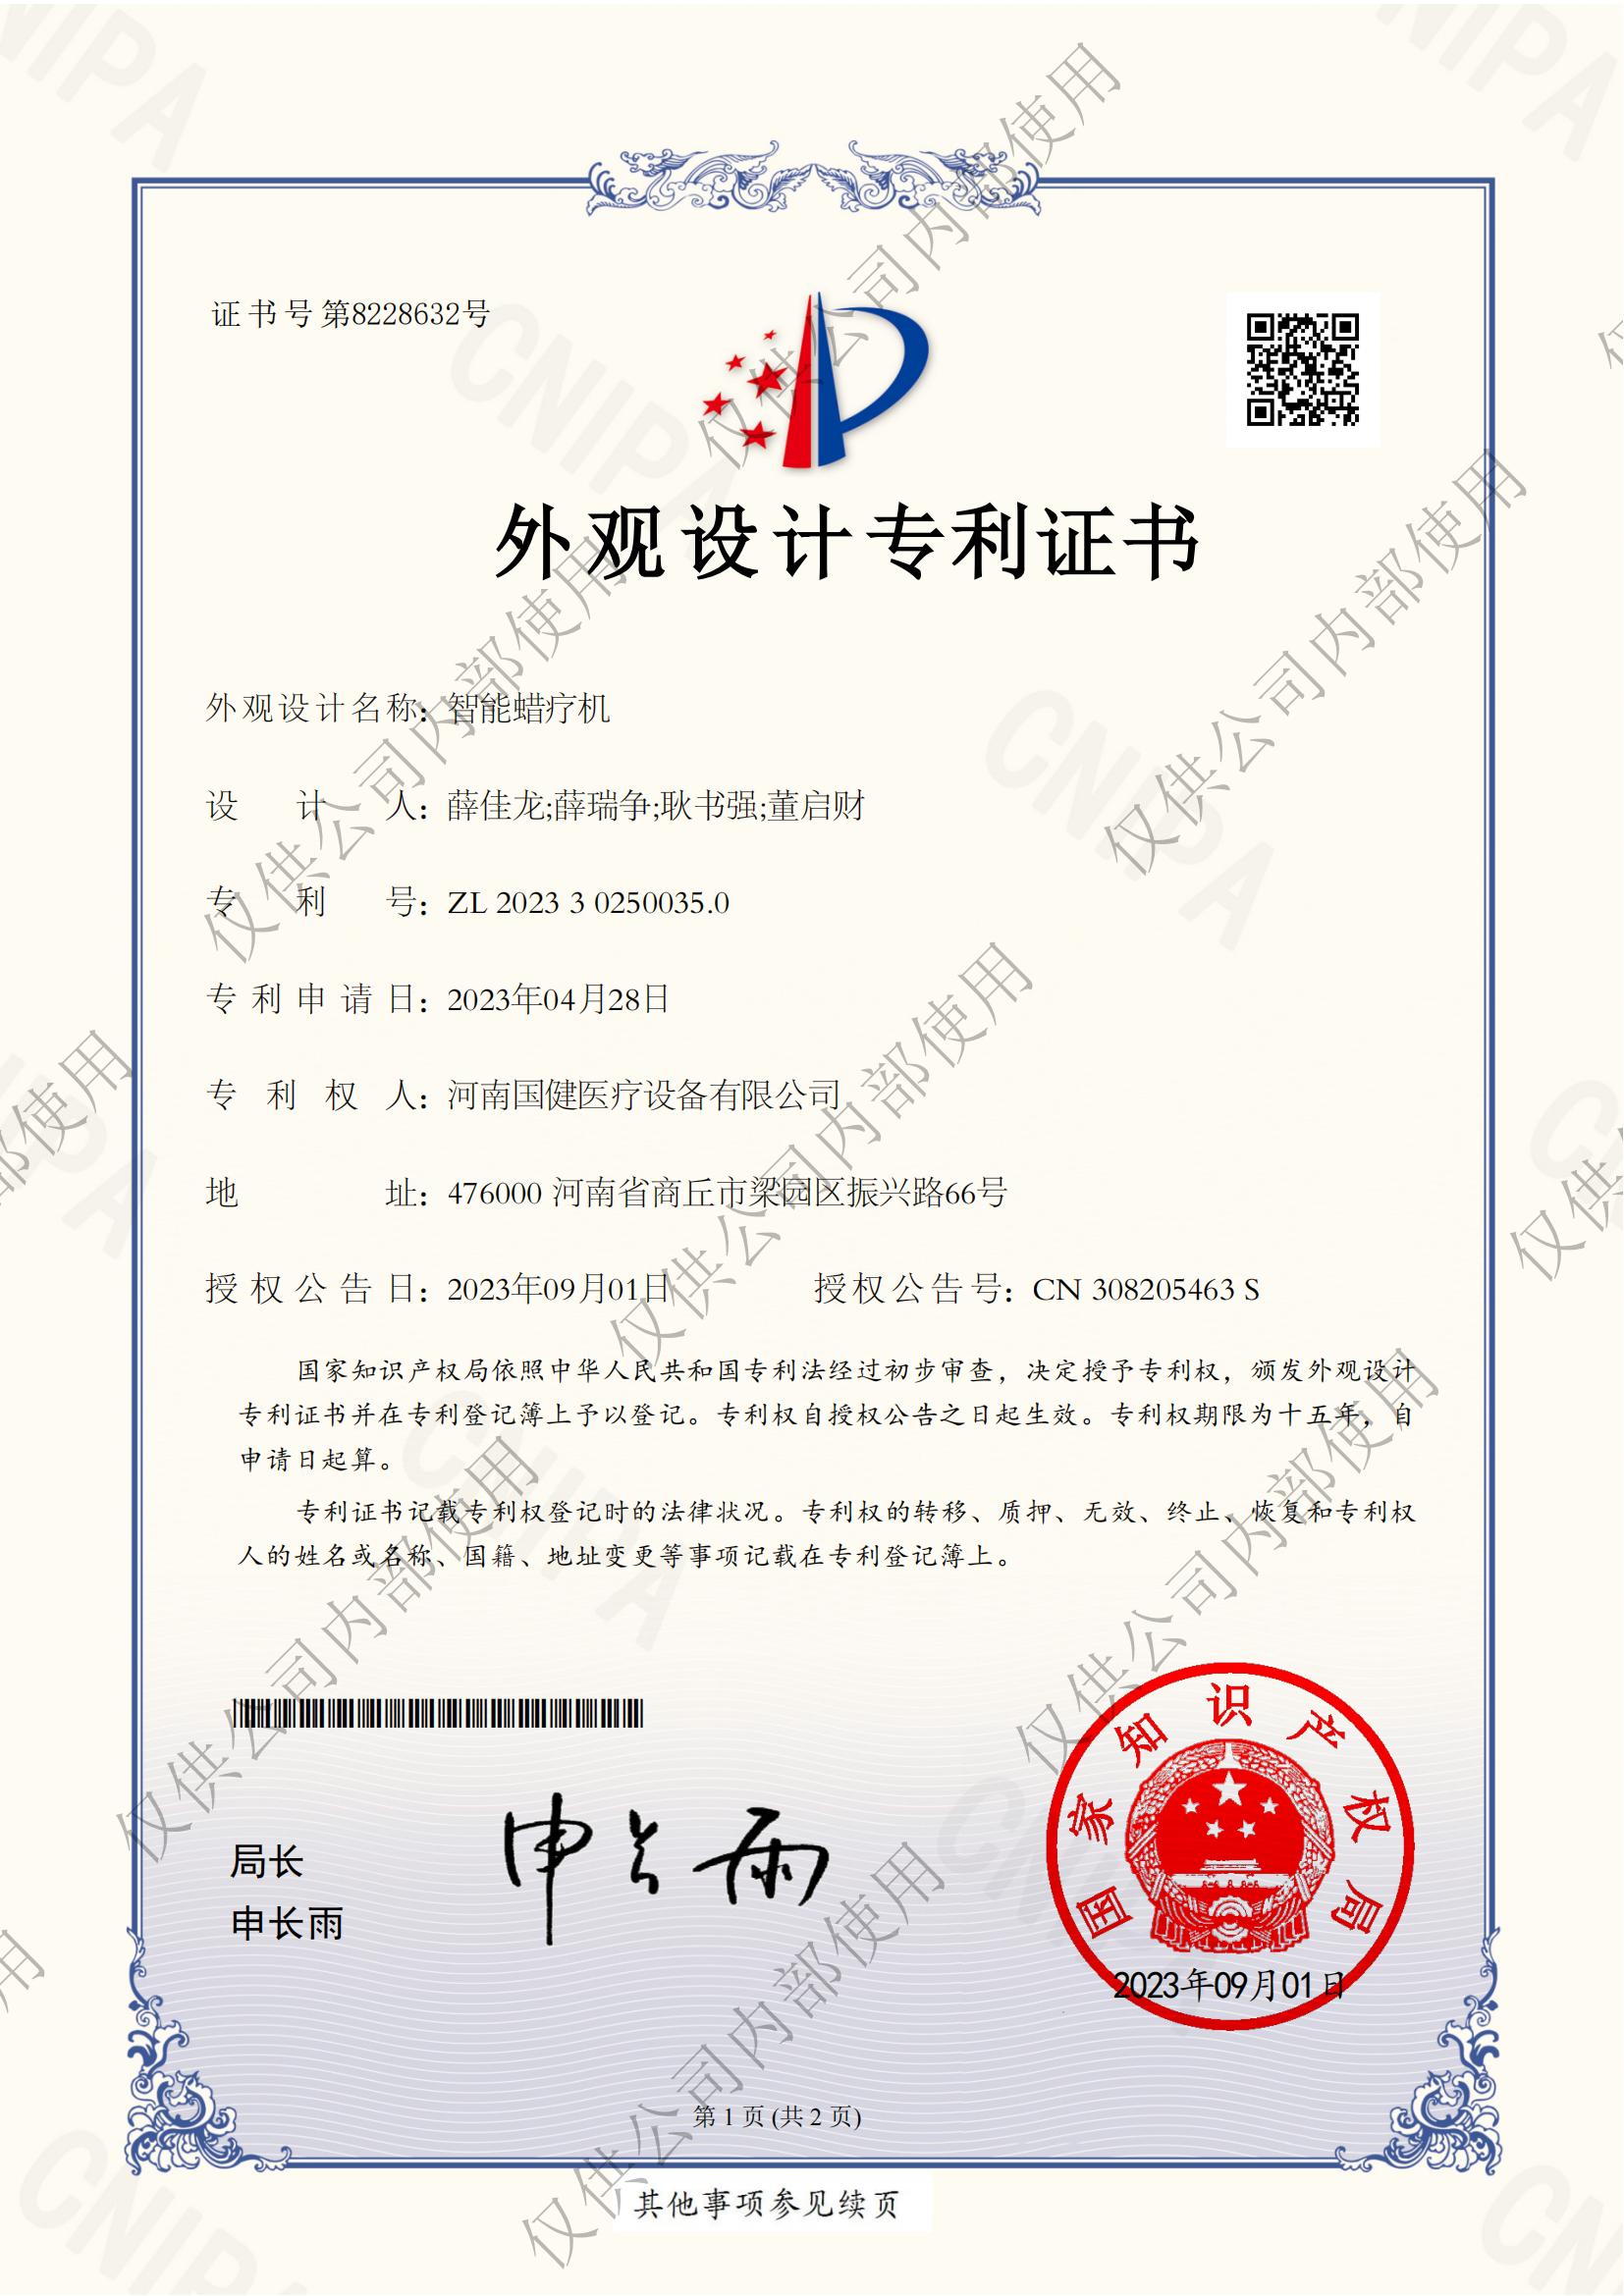 【河南国建】祝贺河南国健医疗集团研发中心9月份再添三种实用新型专利证书(图1)